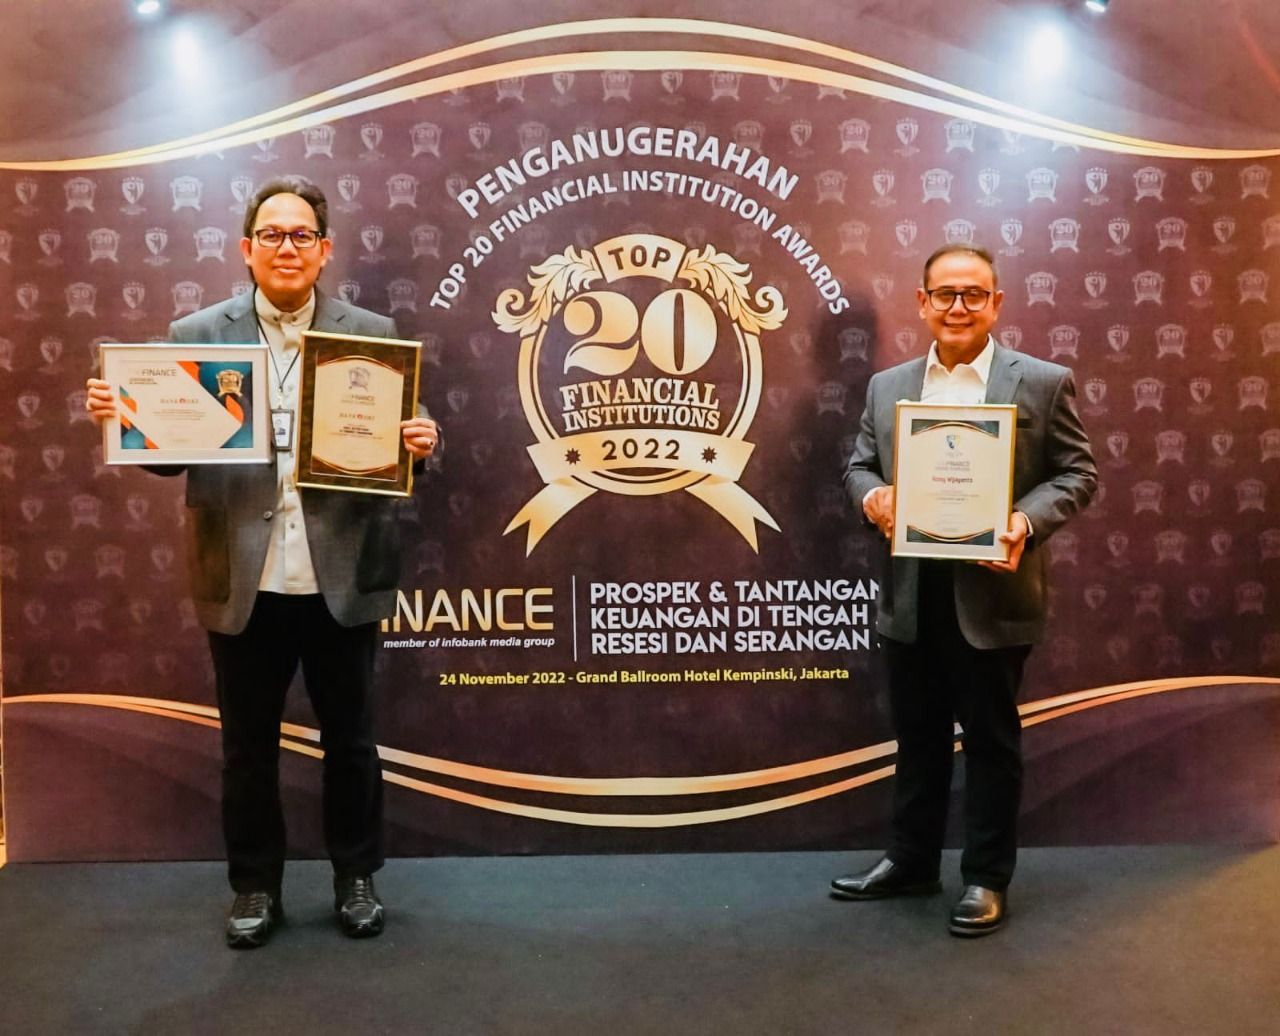 Penghargaan Top 20 Financial Institution Award 2022 ini merupakan apresiasi atas pencapaian kinerja Bank DKI yang mampu berhasil tumbuh dengan stabil selama tiga tahun terakhir.